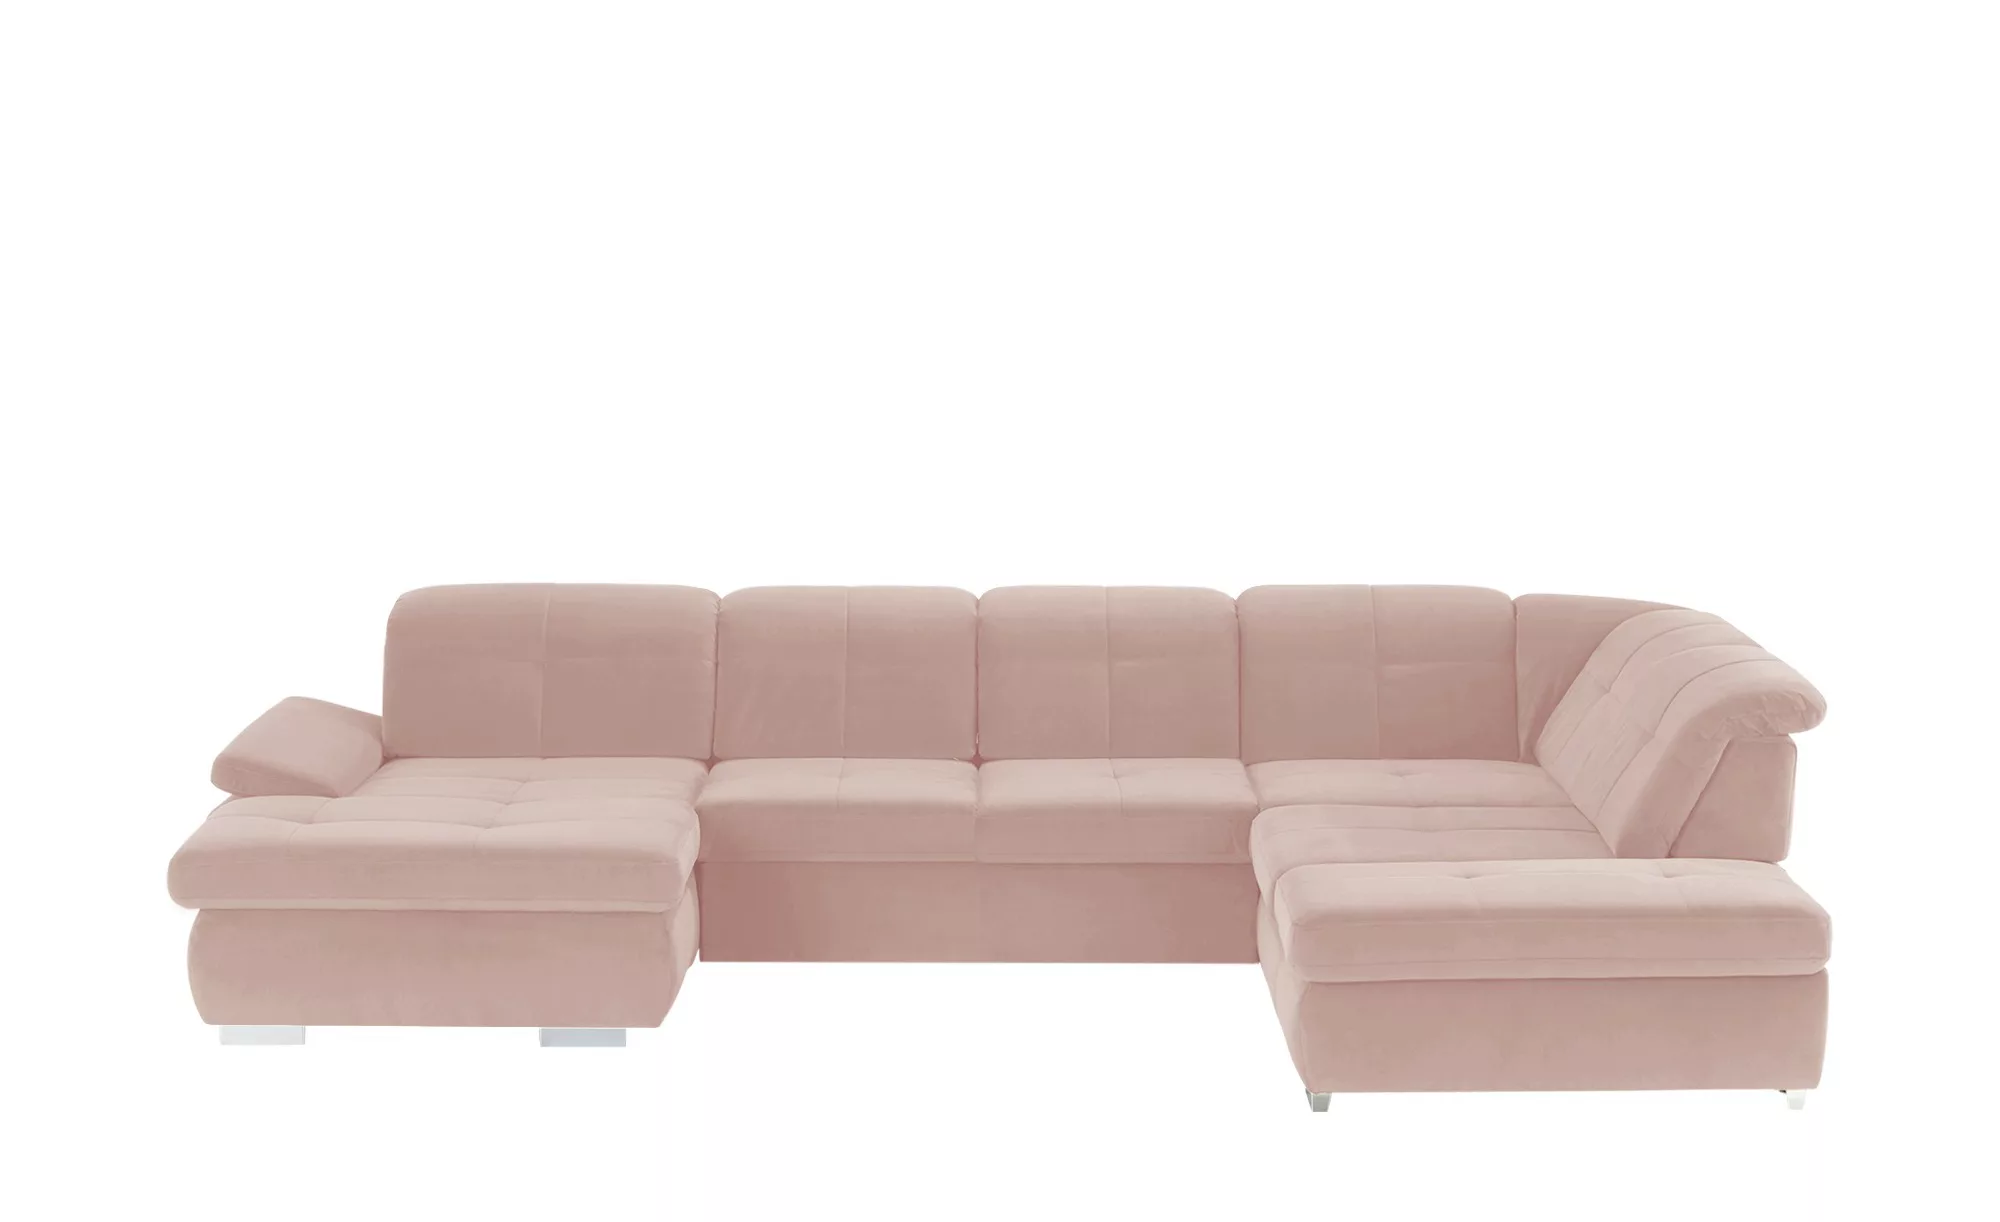 Wohnlandschaft - rosa/pink - Polstermöbel > Sofas > Wohnlandschaften - Möbe günstig online kaufen